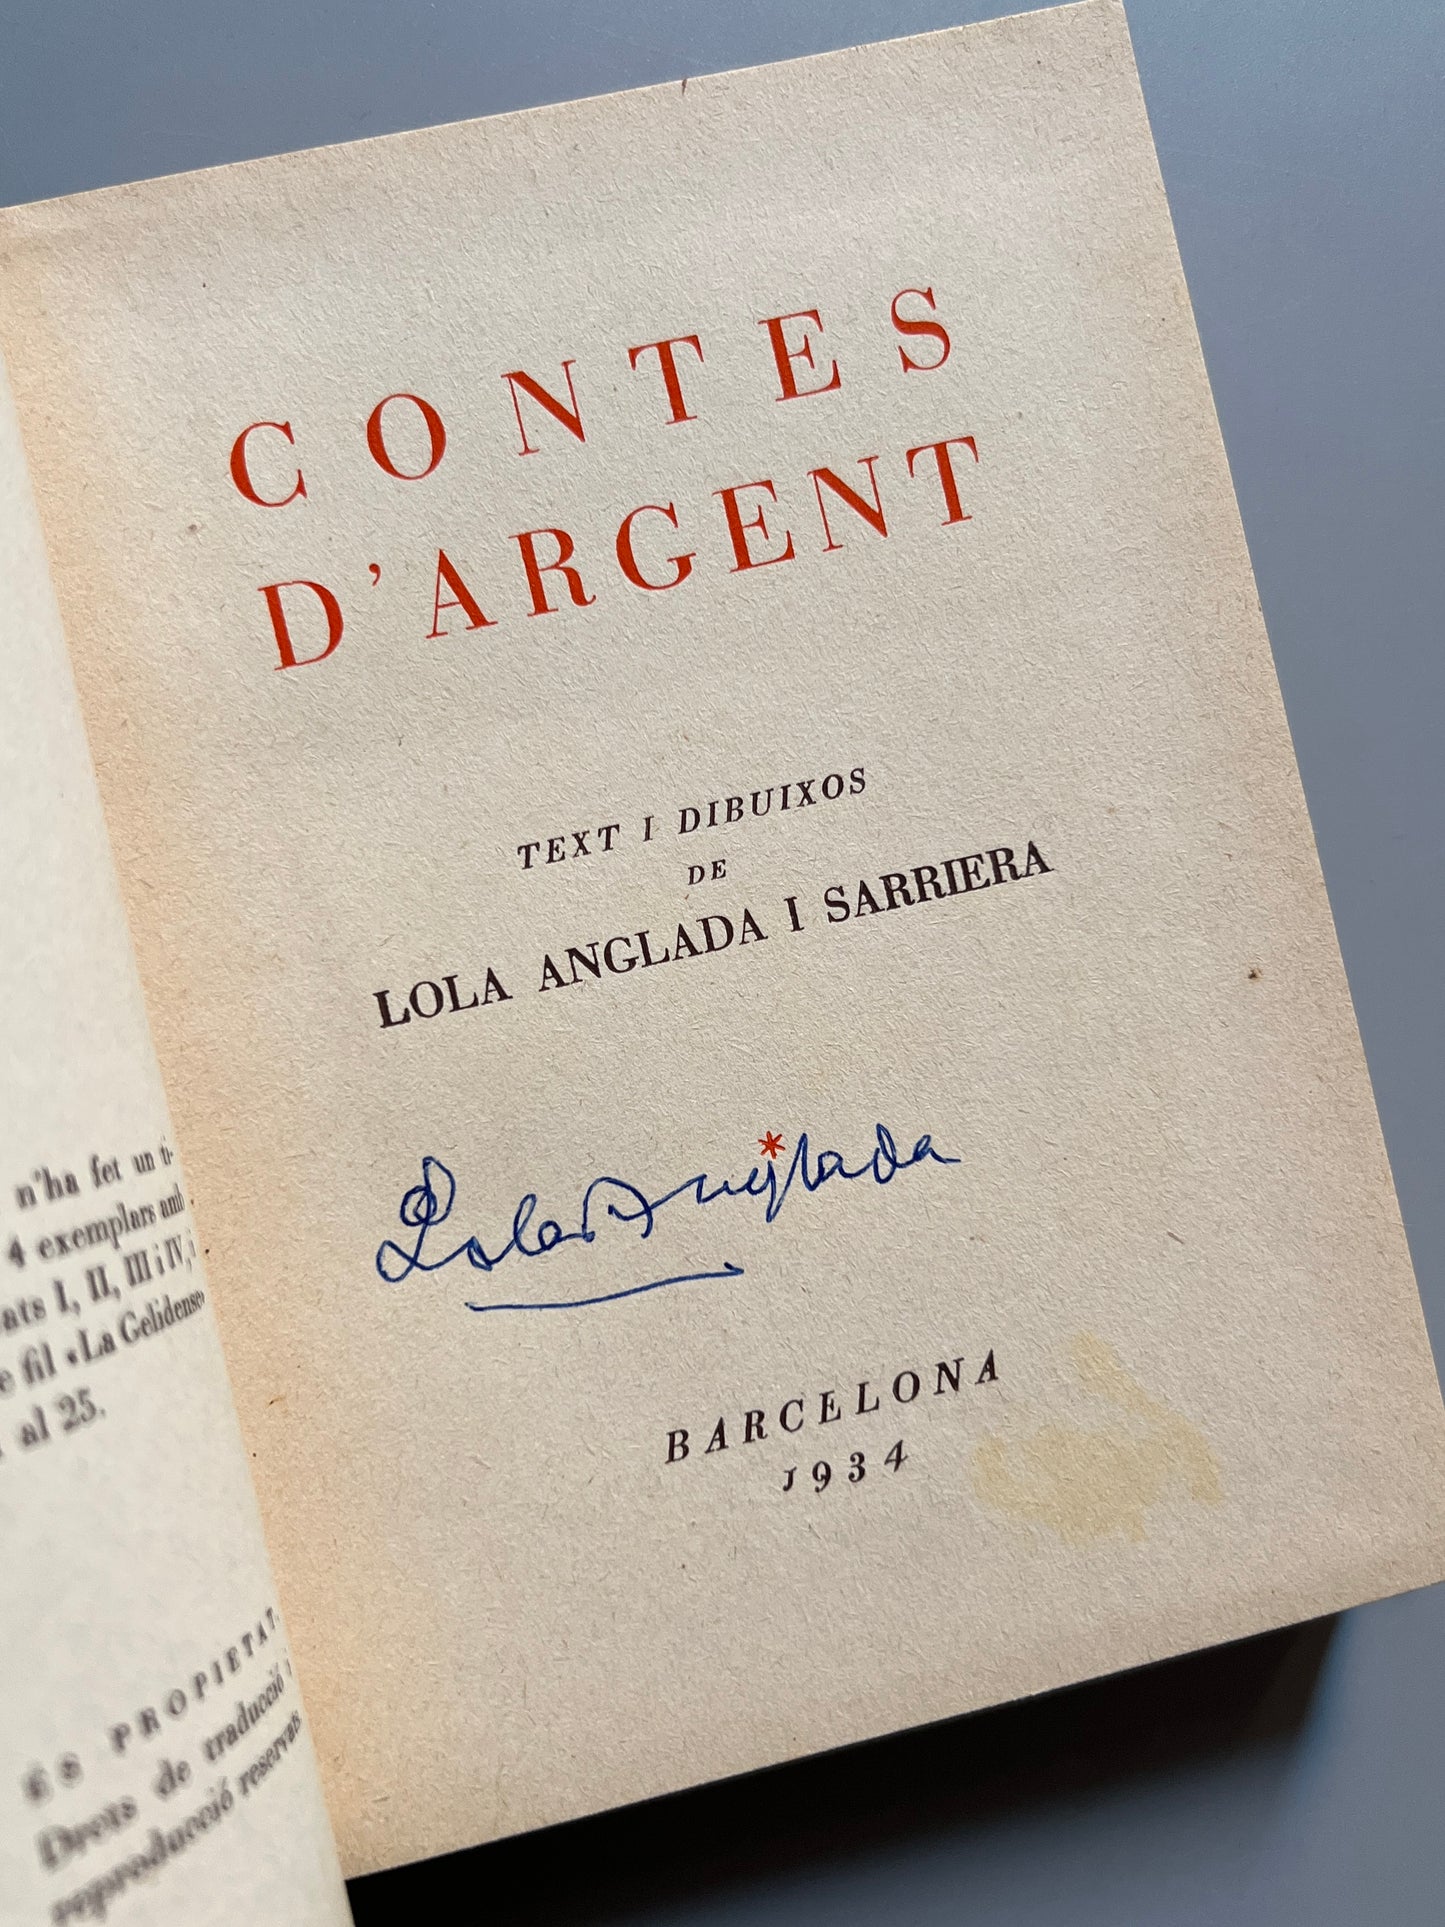 Contes d'argent, Lola Anglada (firmado) - Llibreria Verdaguer, 1934